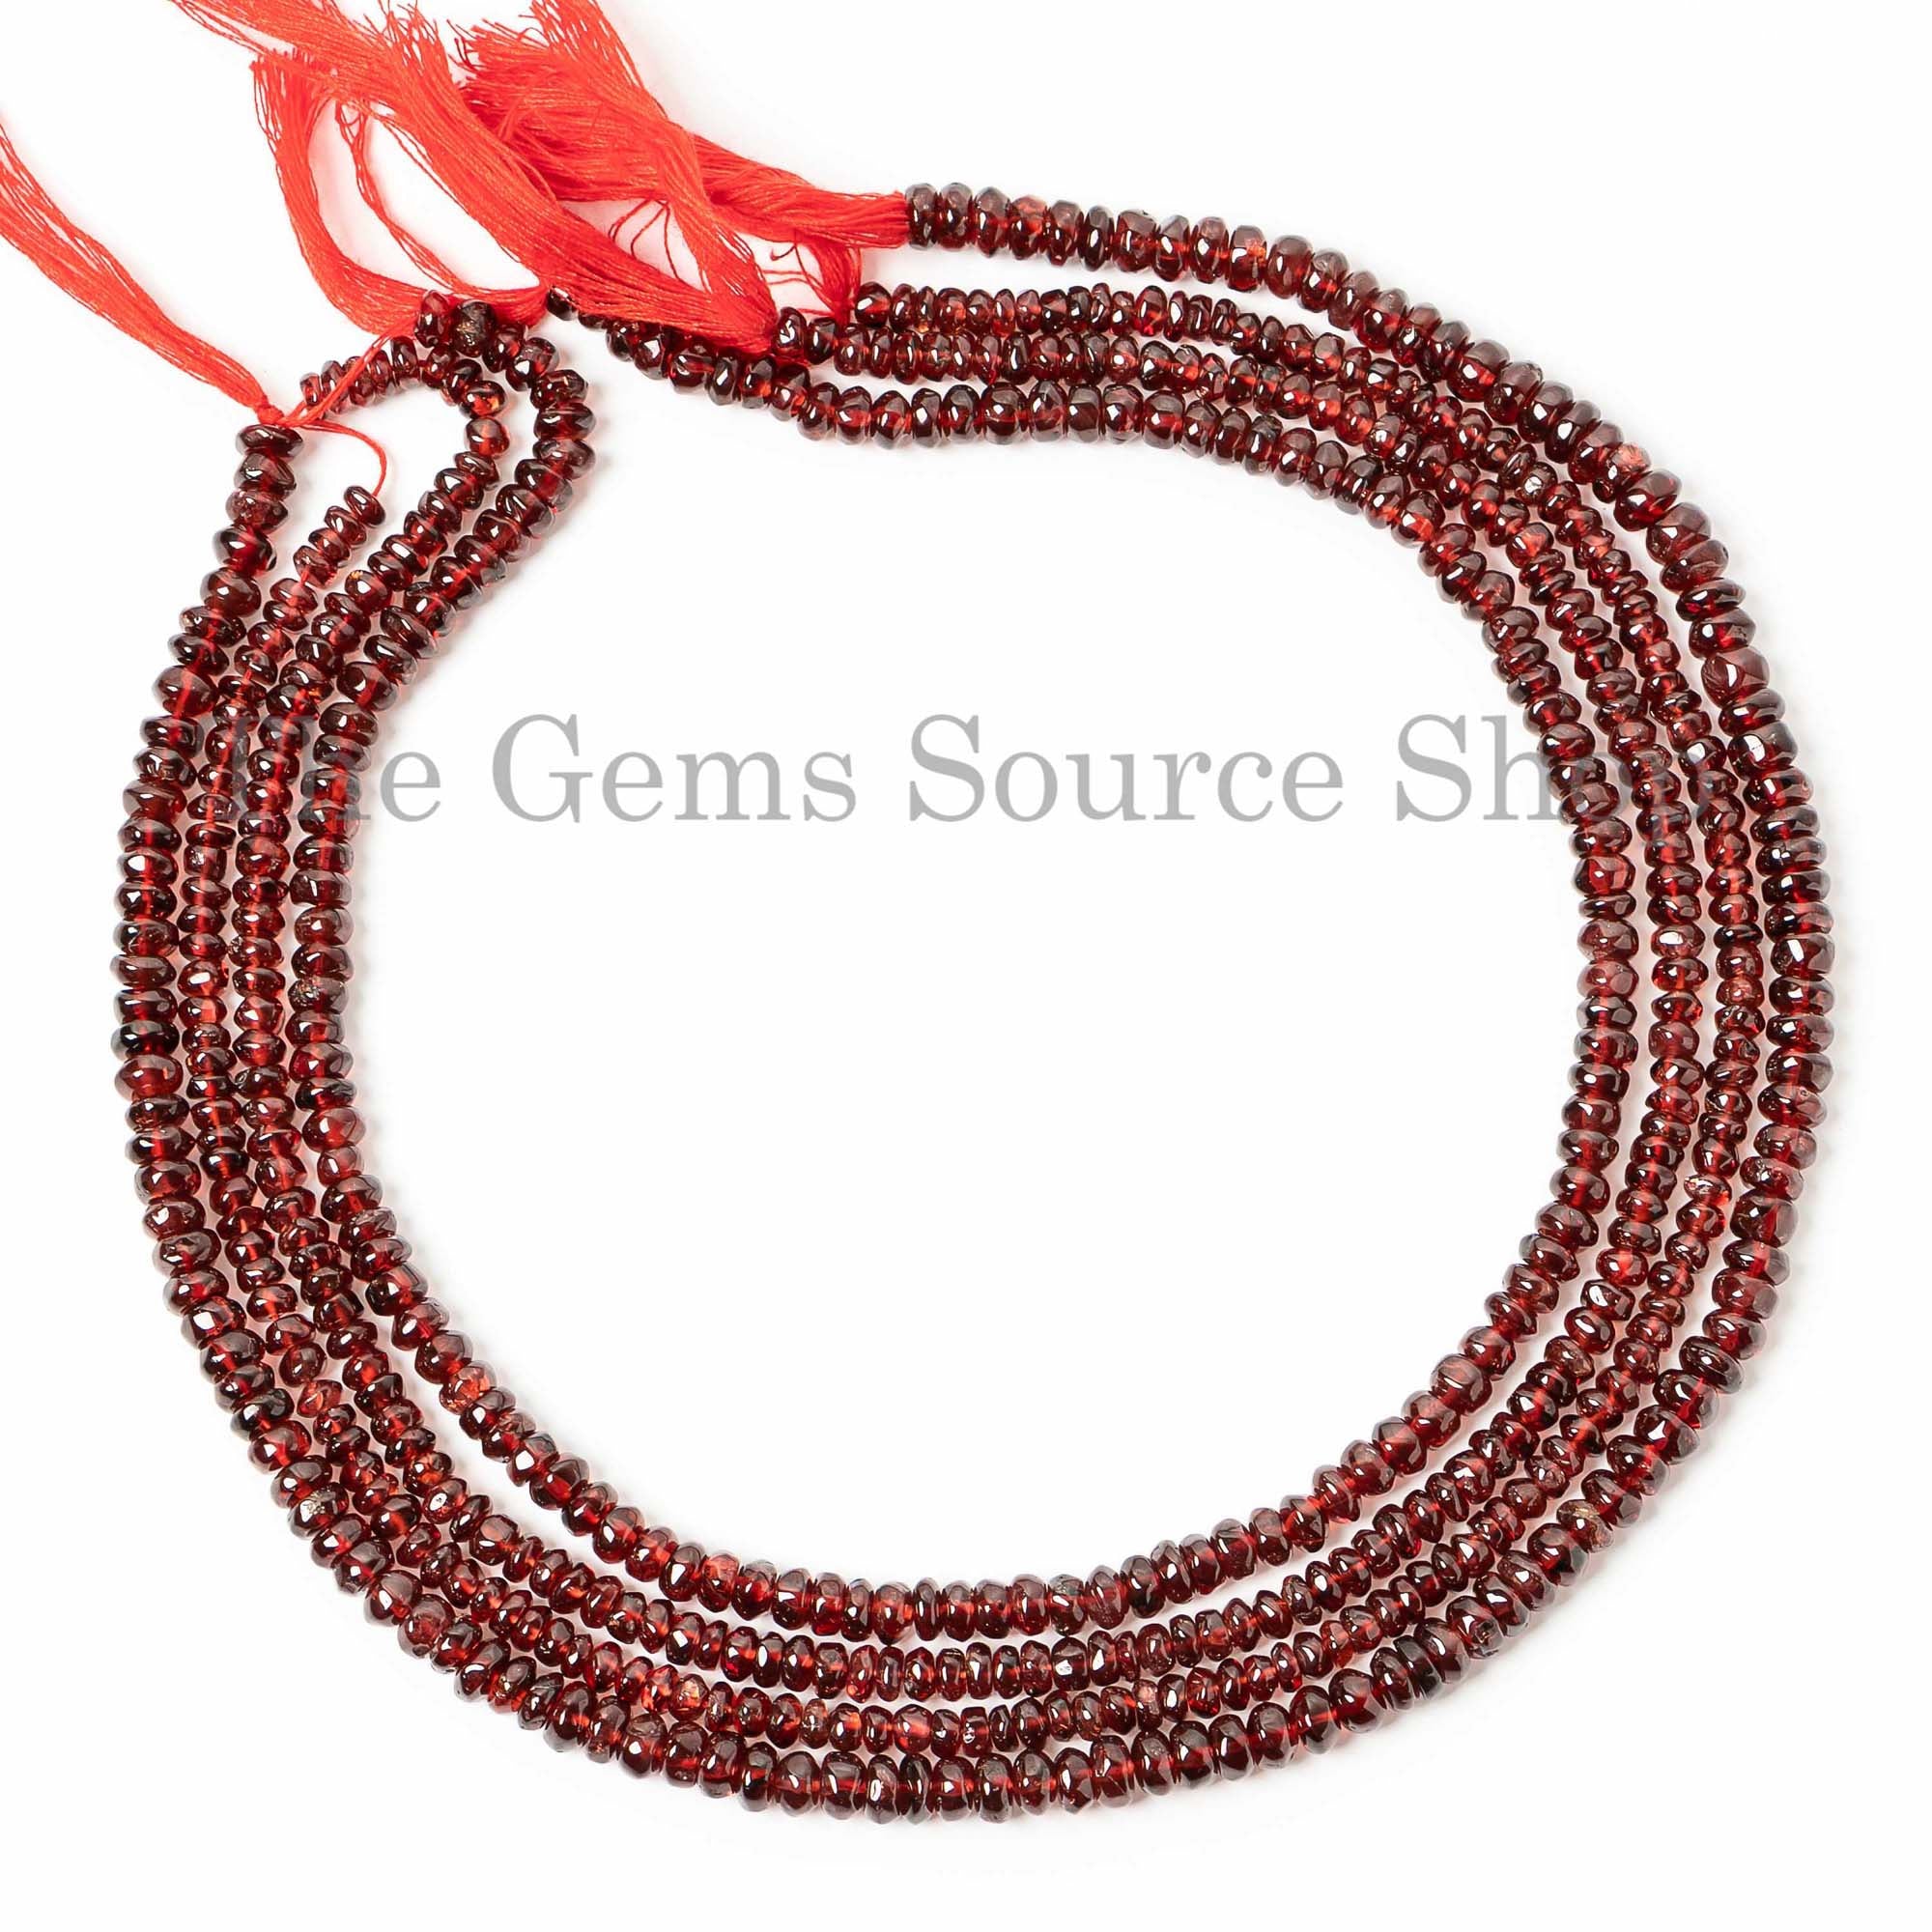 Garnet 4-5mm Rondelle Shape Beads, Garnet Plain Beads, Garnet Smooth Rondelle Beads, Red Garnet Rondelle Beads